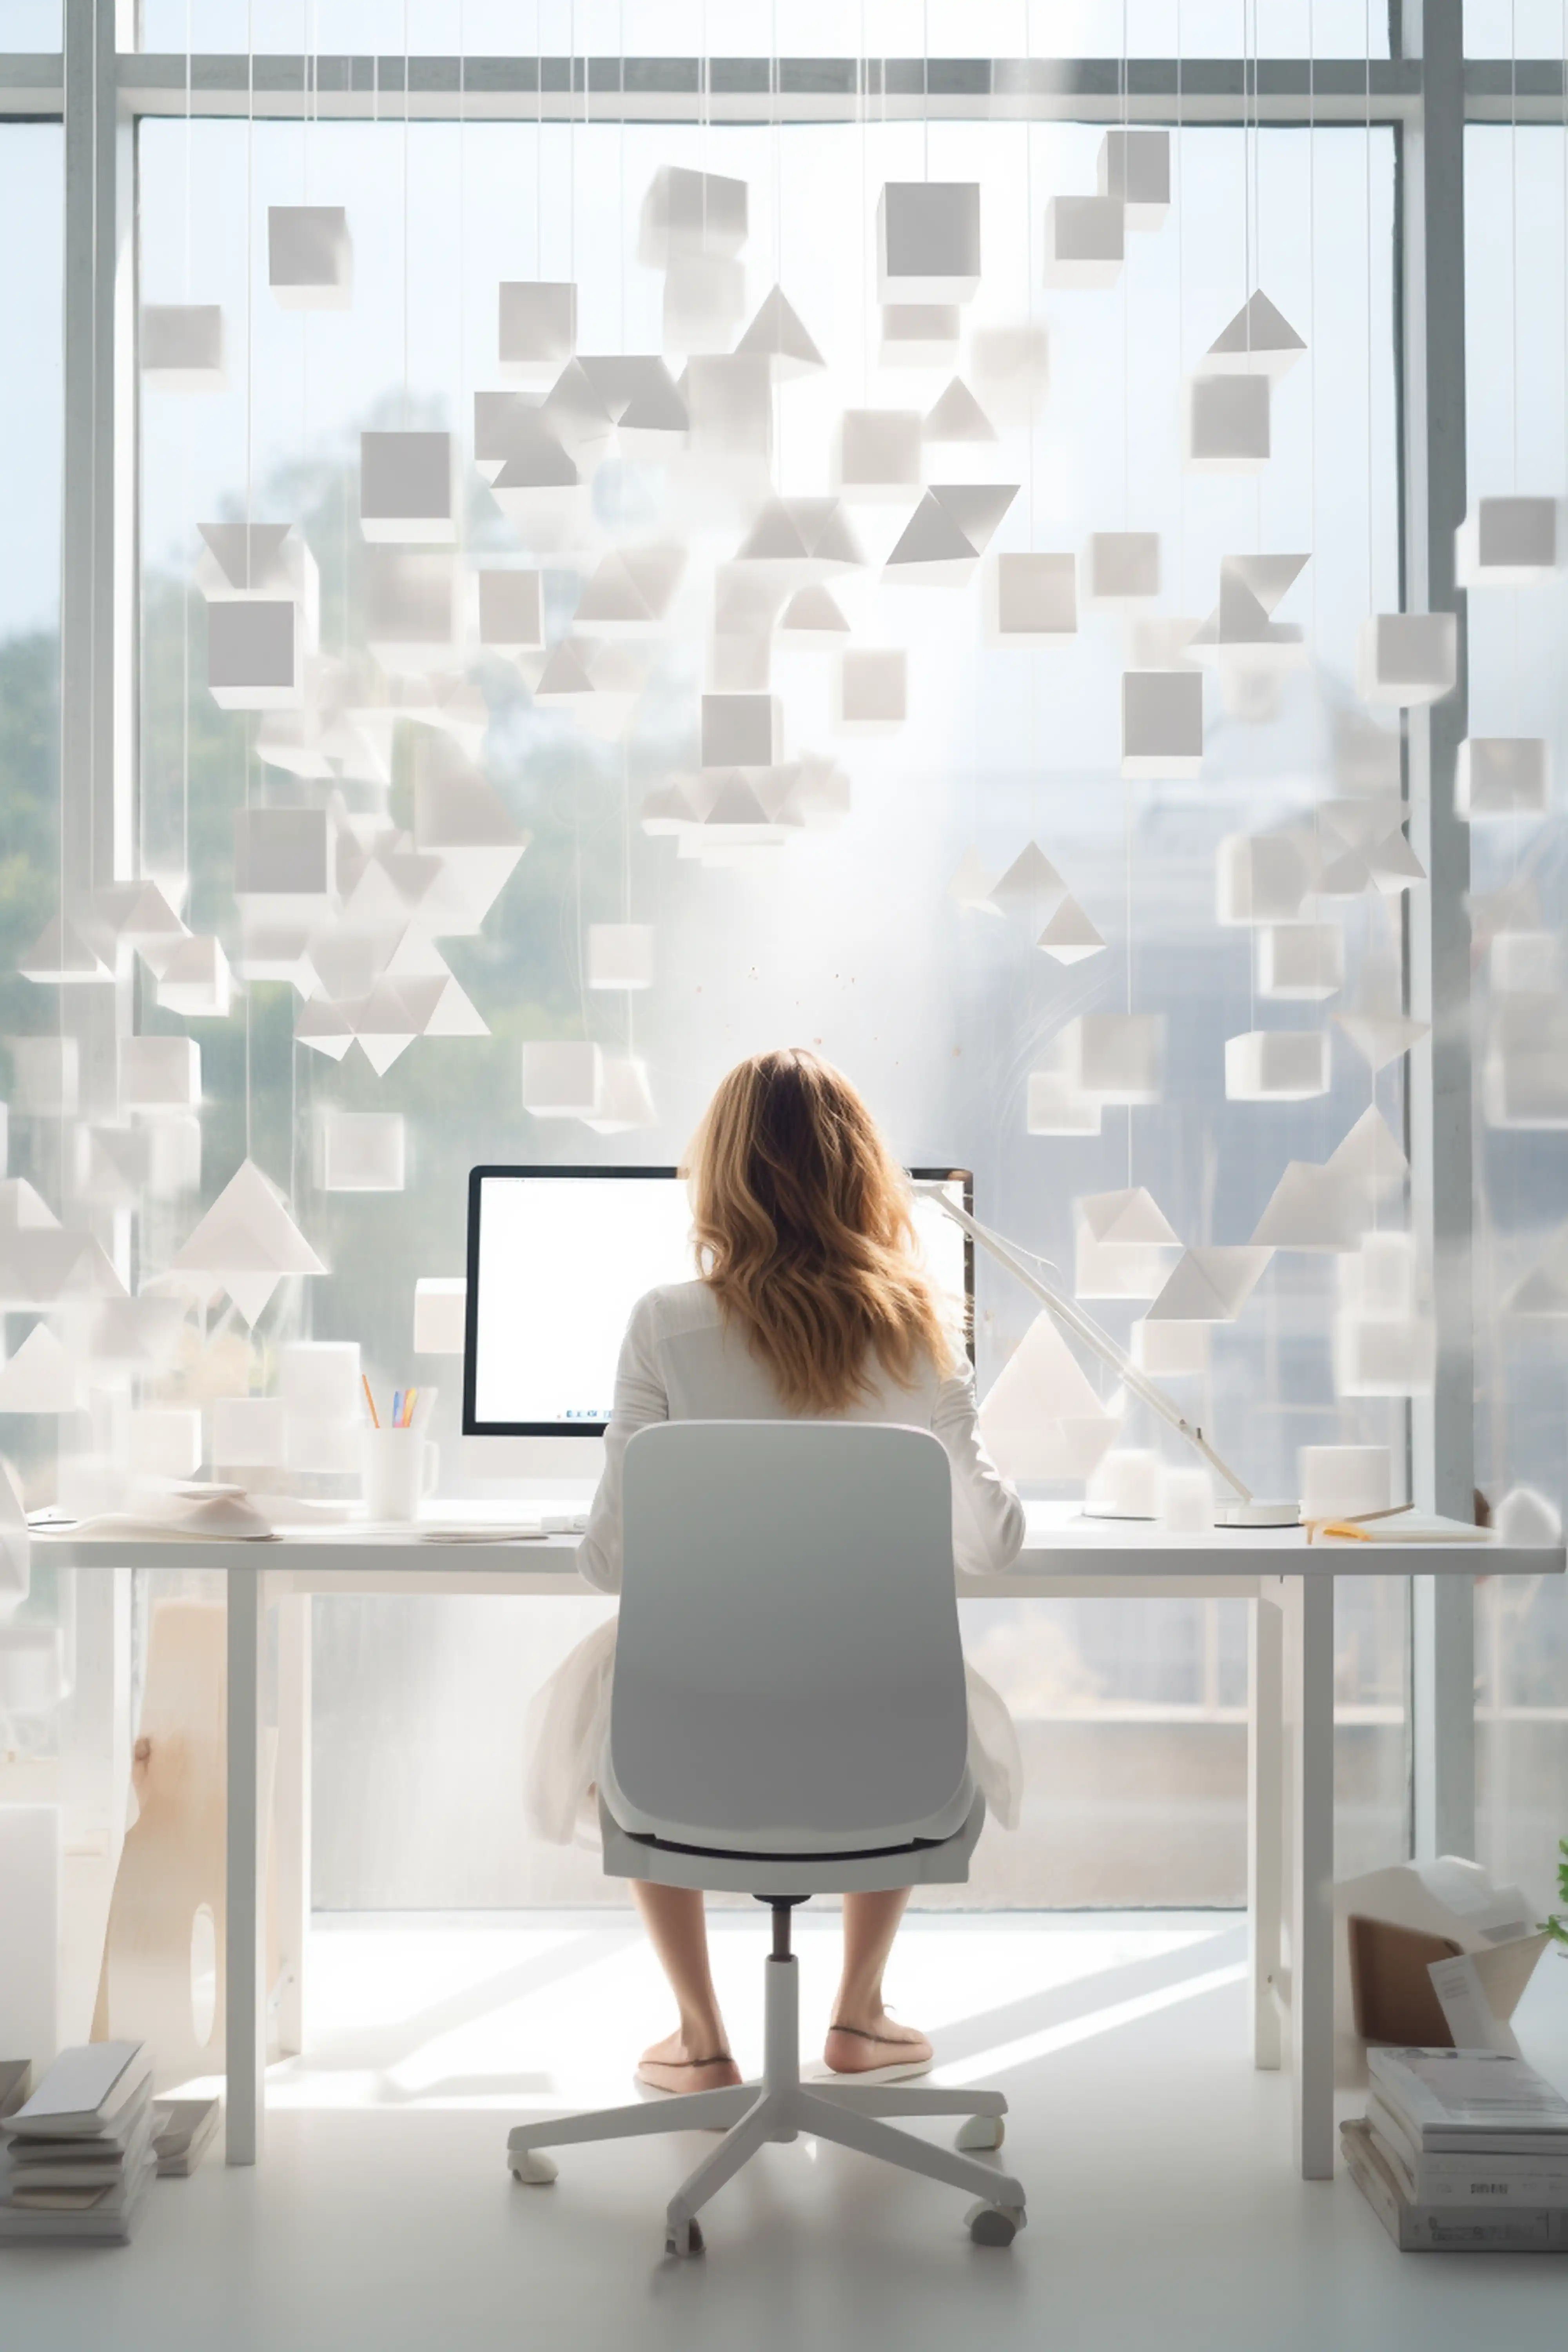 Femme travaillant à un bureau moderne avec un ordinateur, éclairée en contre-jour par une grande fenêtre ornée de formes géométriques flottantes